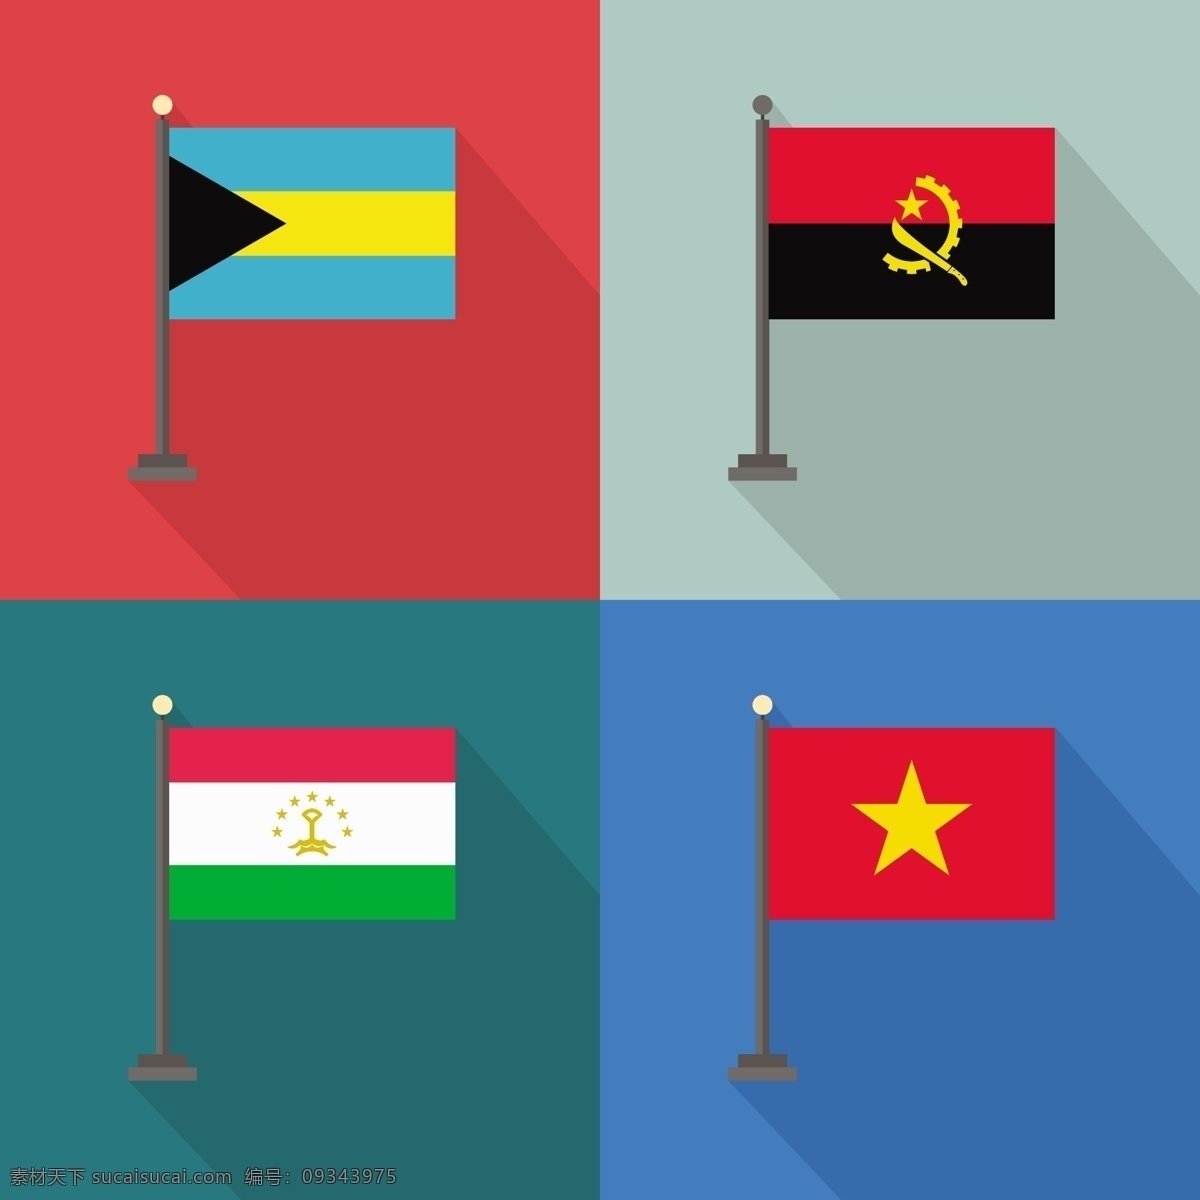 巴哈马 塔吉克斯坦 安哥拉 越南 国旗 世界 国家 国际 爱国 民族 爱国主义 白色